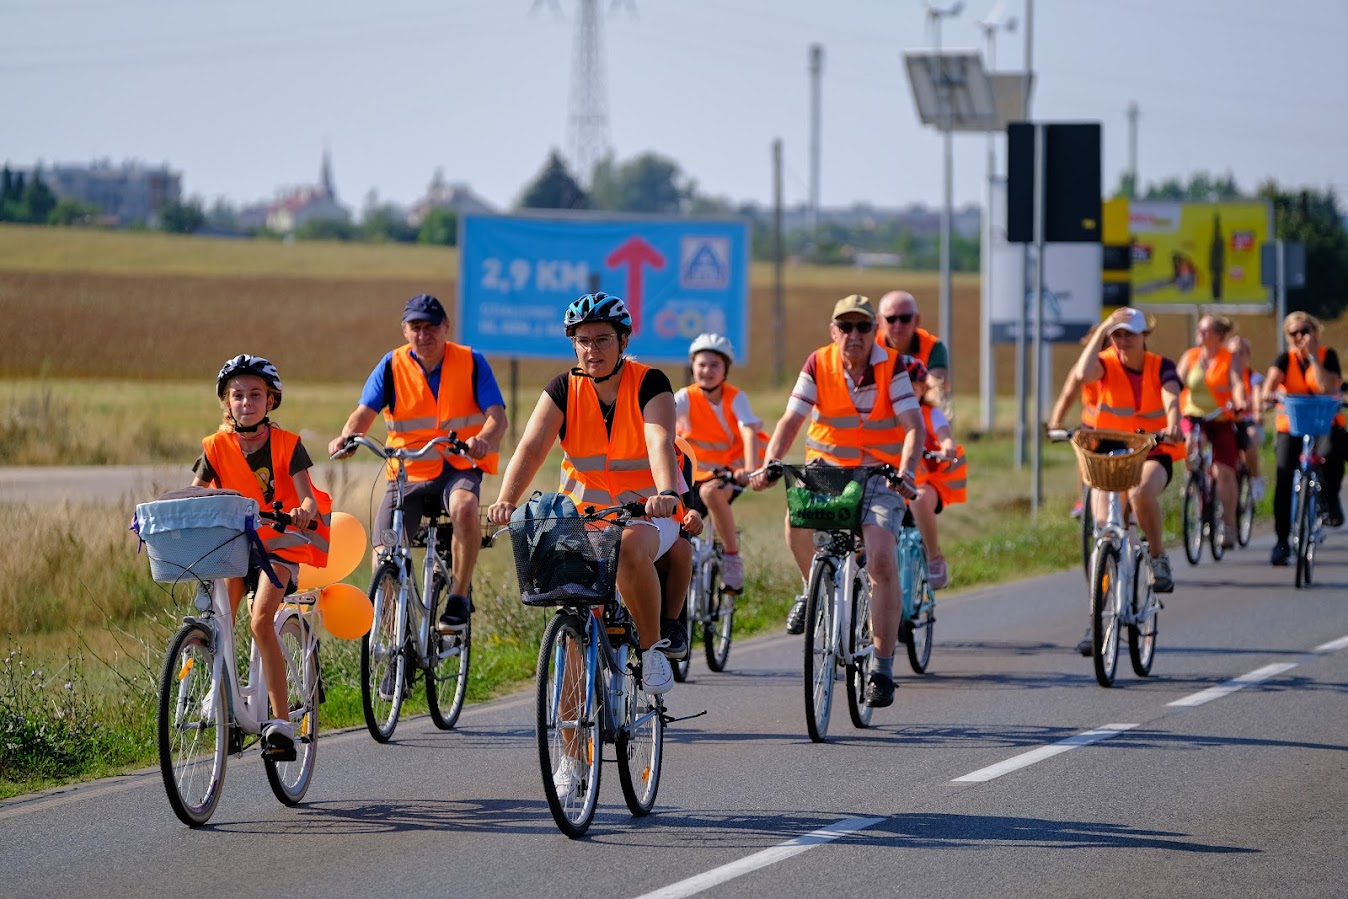 uczestnicy rajdu rowerowego jadą drogą publiczną, wszyscy mają założone pomarańczowe kamizelki odblaskowe z napisem Odjazdowy bibliotekarz